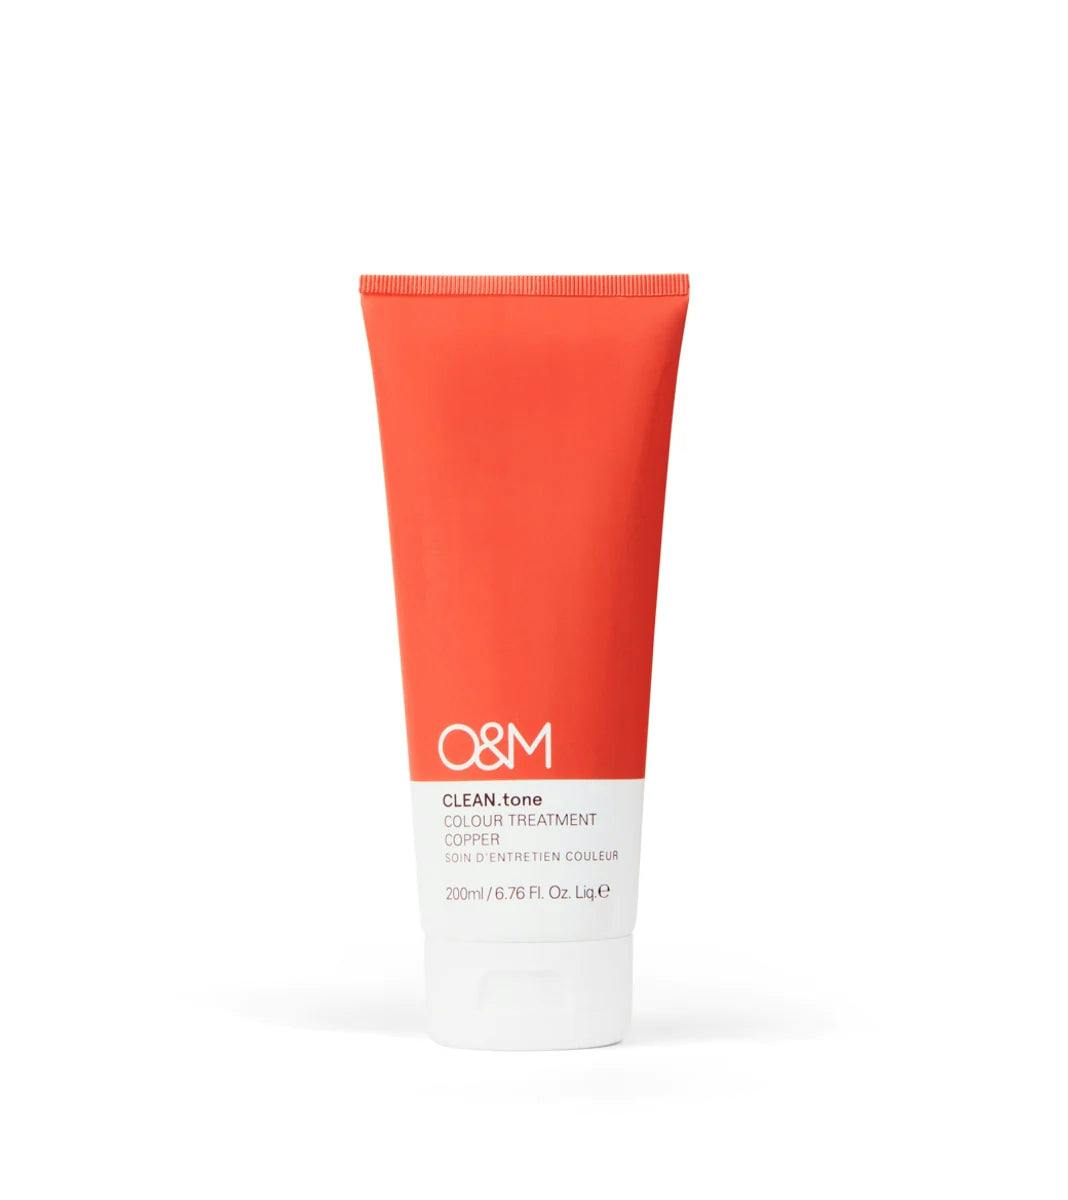 O&M Clean.tone Colour Treatment Copper 200ml